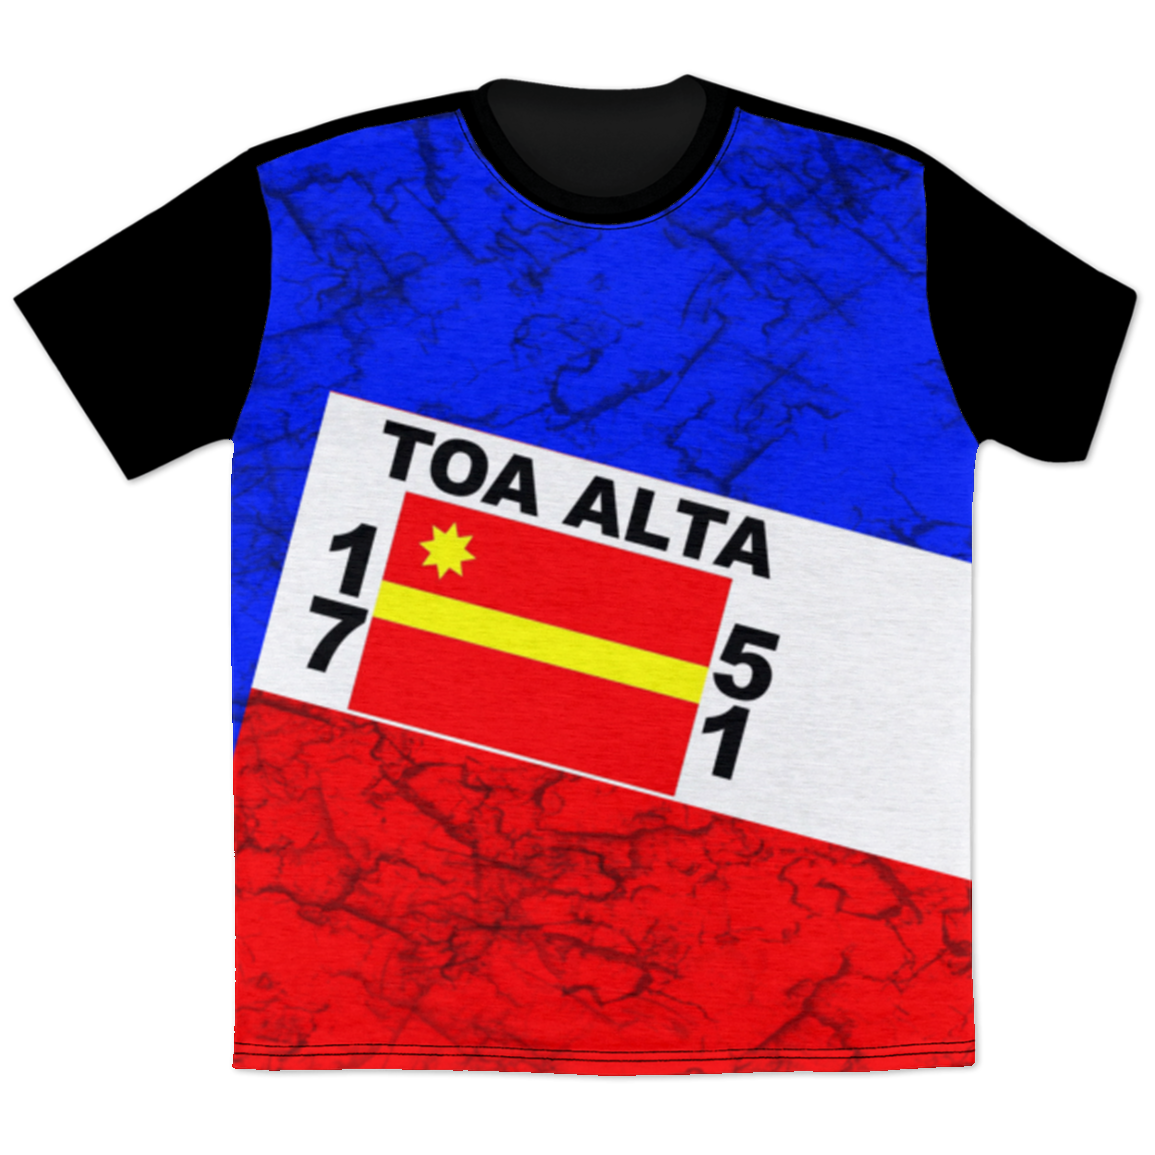 Toa Alta T-Shirt - Puerto Rican Pride